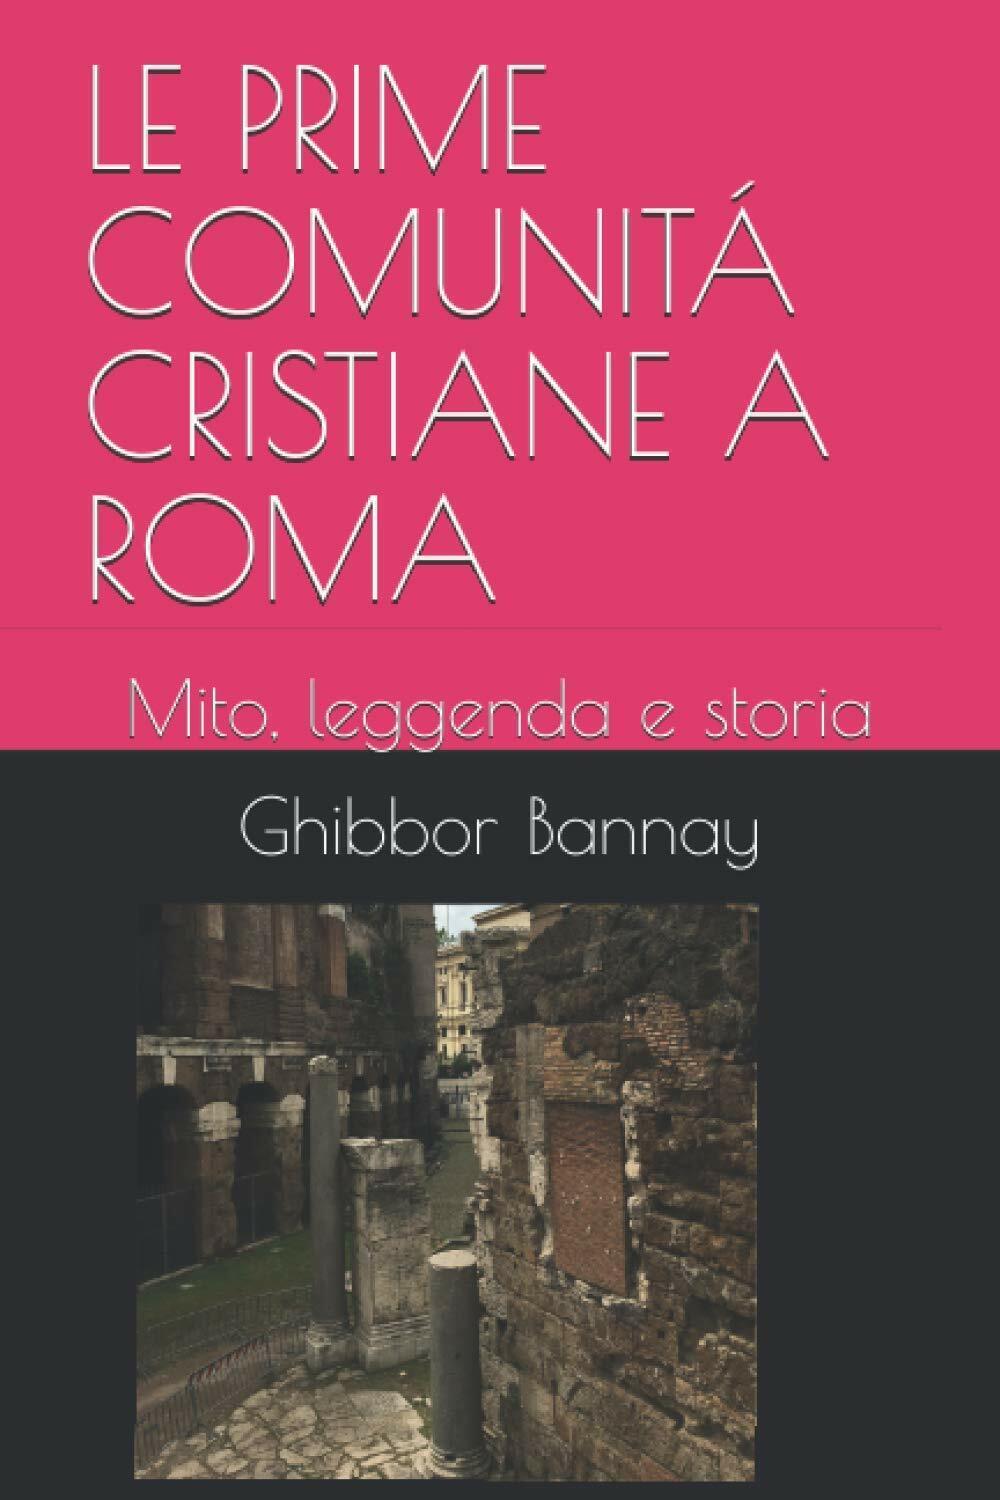 LE PRIME COMUNIT? CRISTIANE A ROMA: Mito, leggenda e storia di Ghibbor Ben Banna